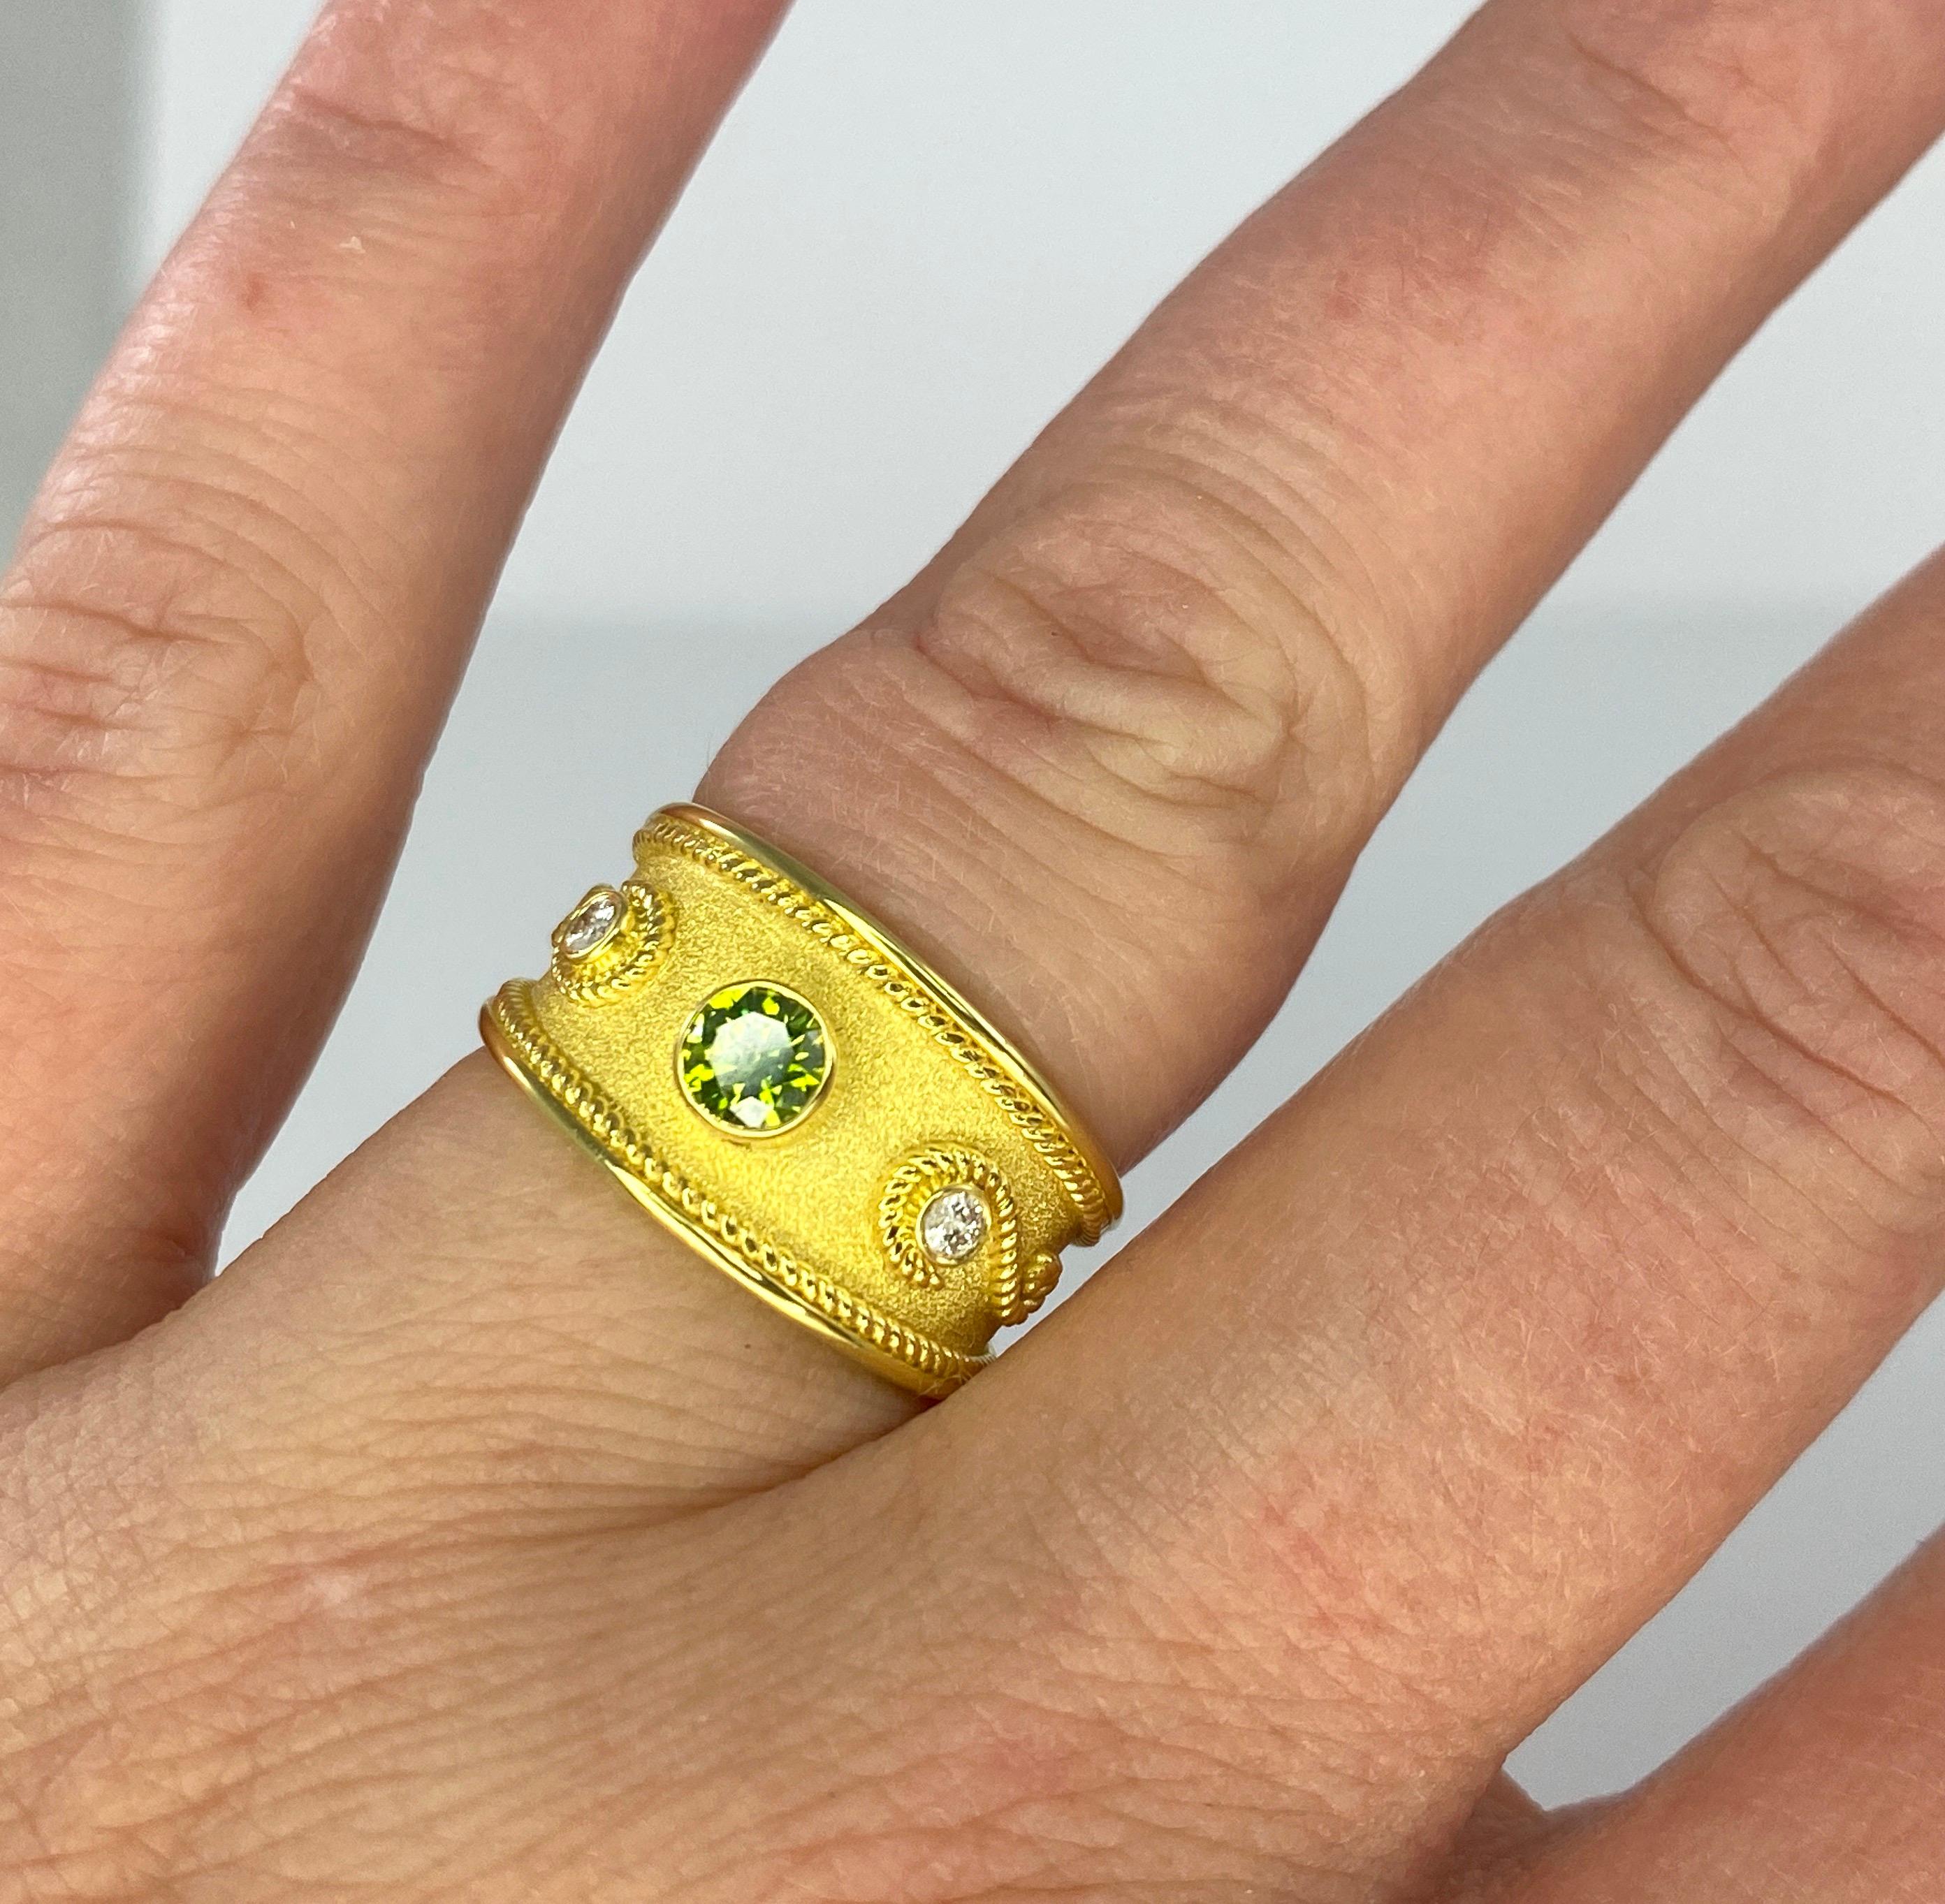 S.Georgios Designerring mit Graduierung, handgefertigt aus massivem 18 Karat Gelbgold. Der Ring ist mikroskopisch genau mit gedrehten Drähten aus 18 Karat Gelbgold verziert, die auf einem Hintergrund aus byzantinischem Samt liegen. Der Ring verfügt